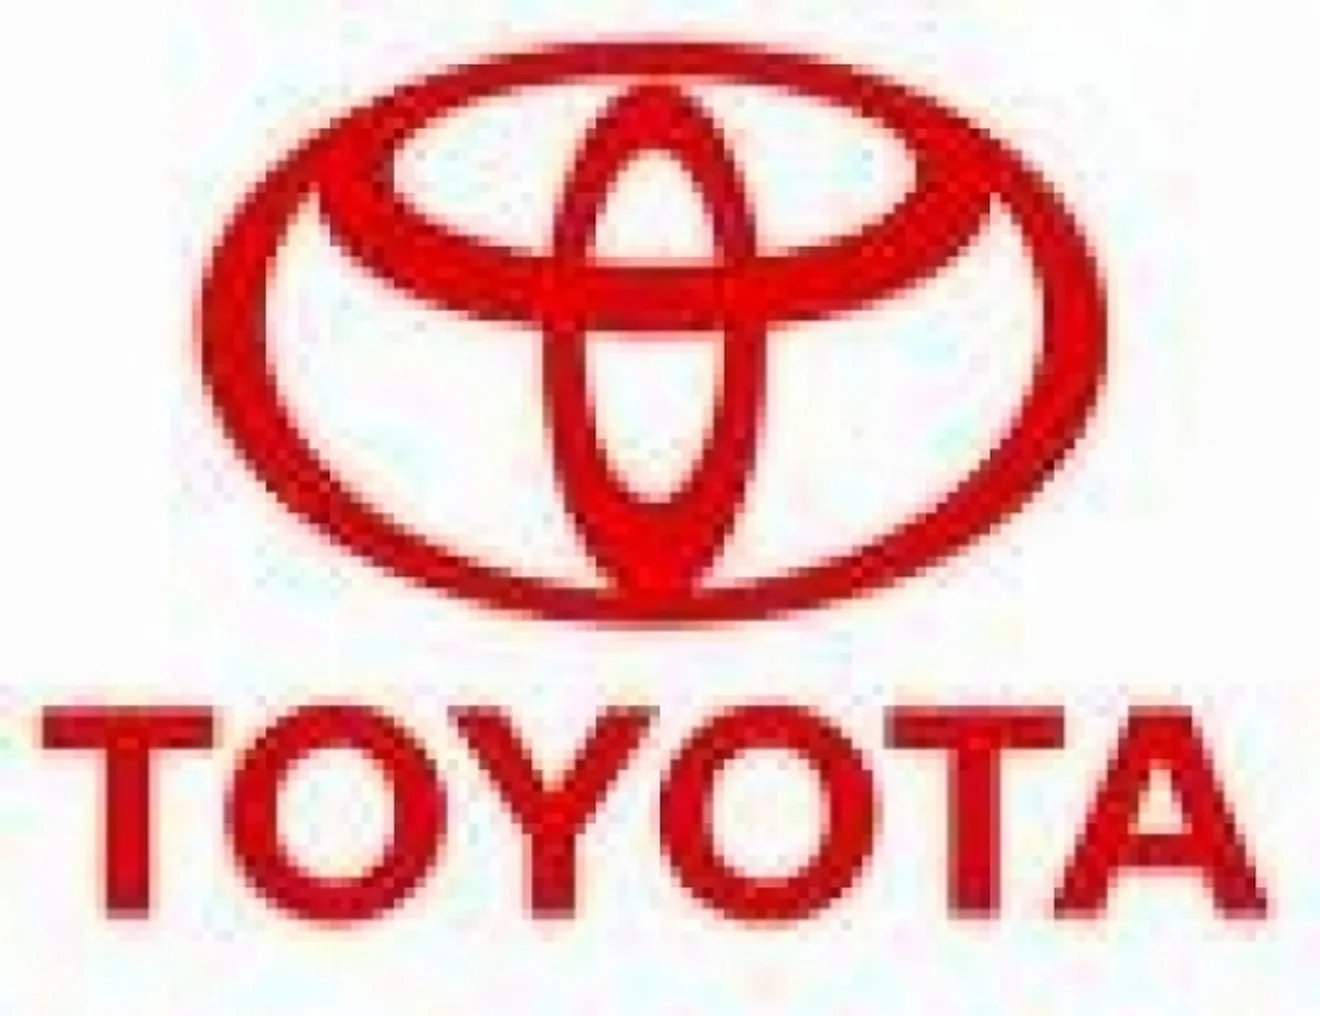 Toyota registra las peores pérdidas de su historia